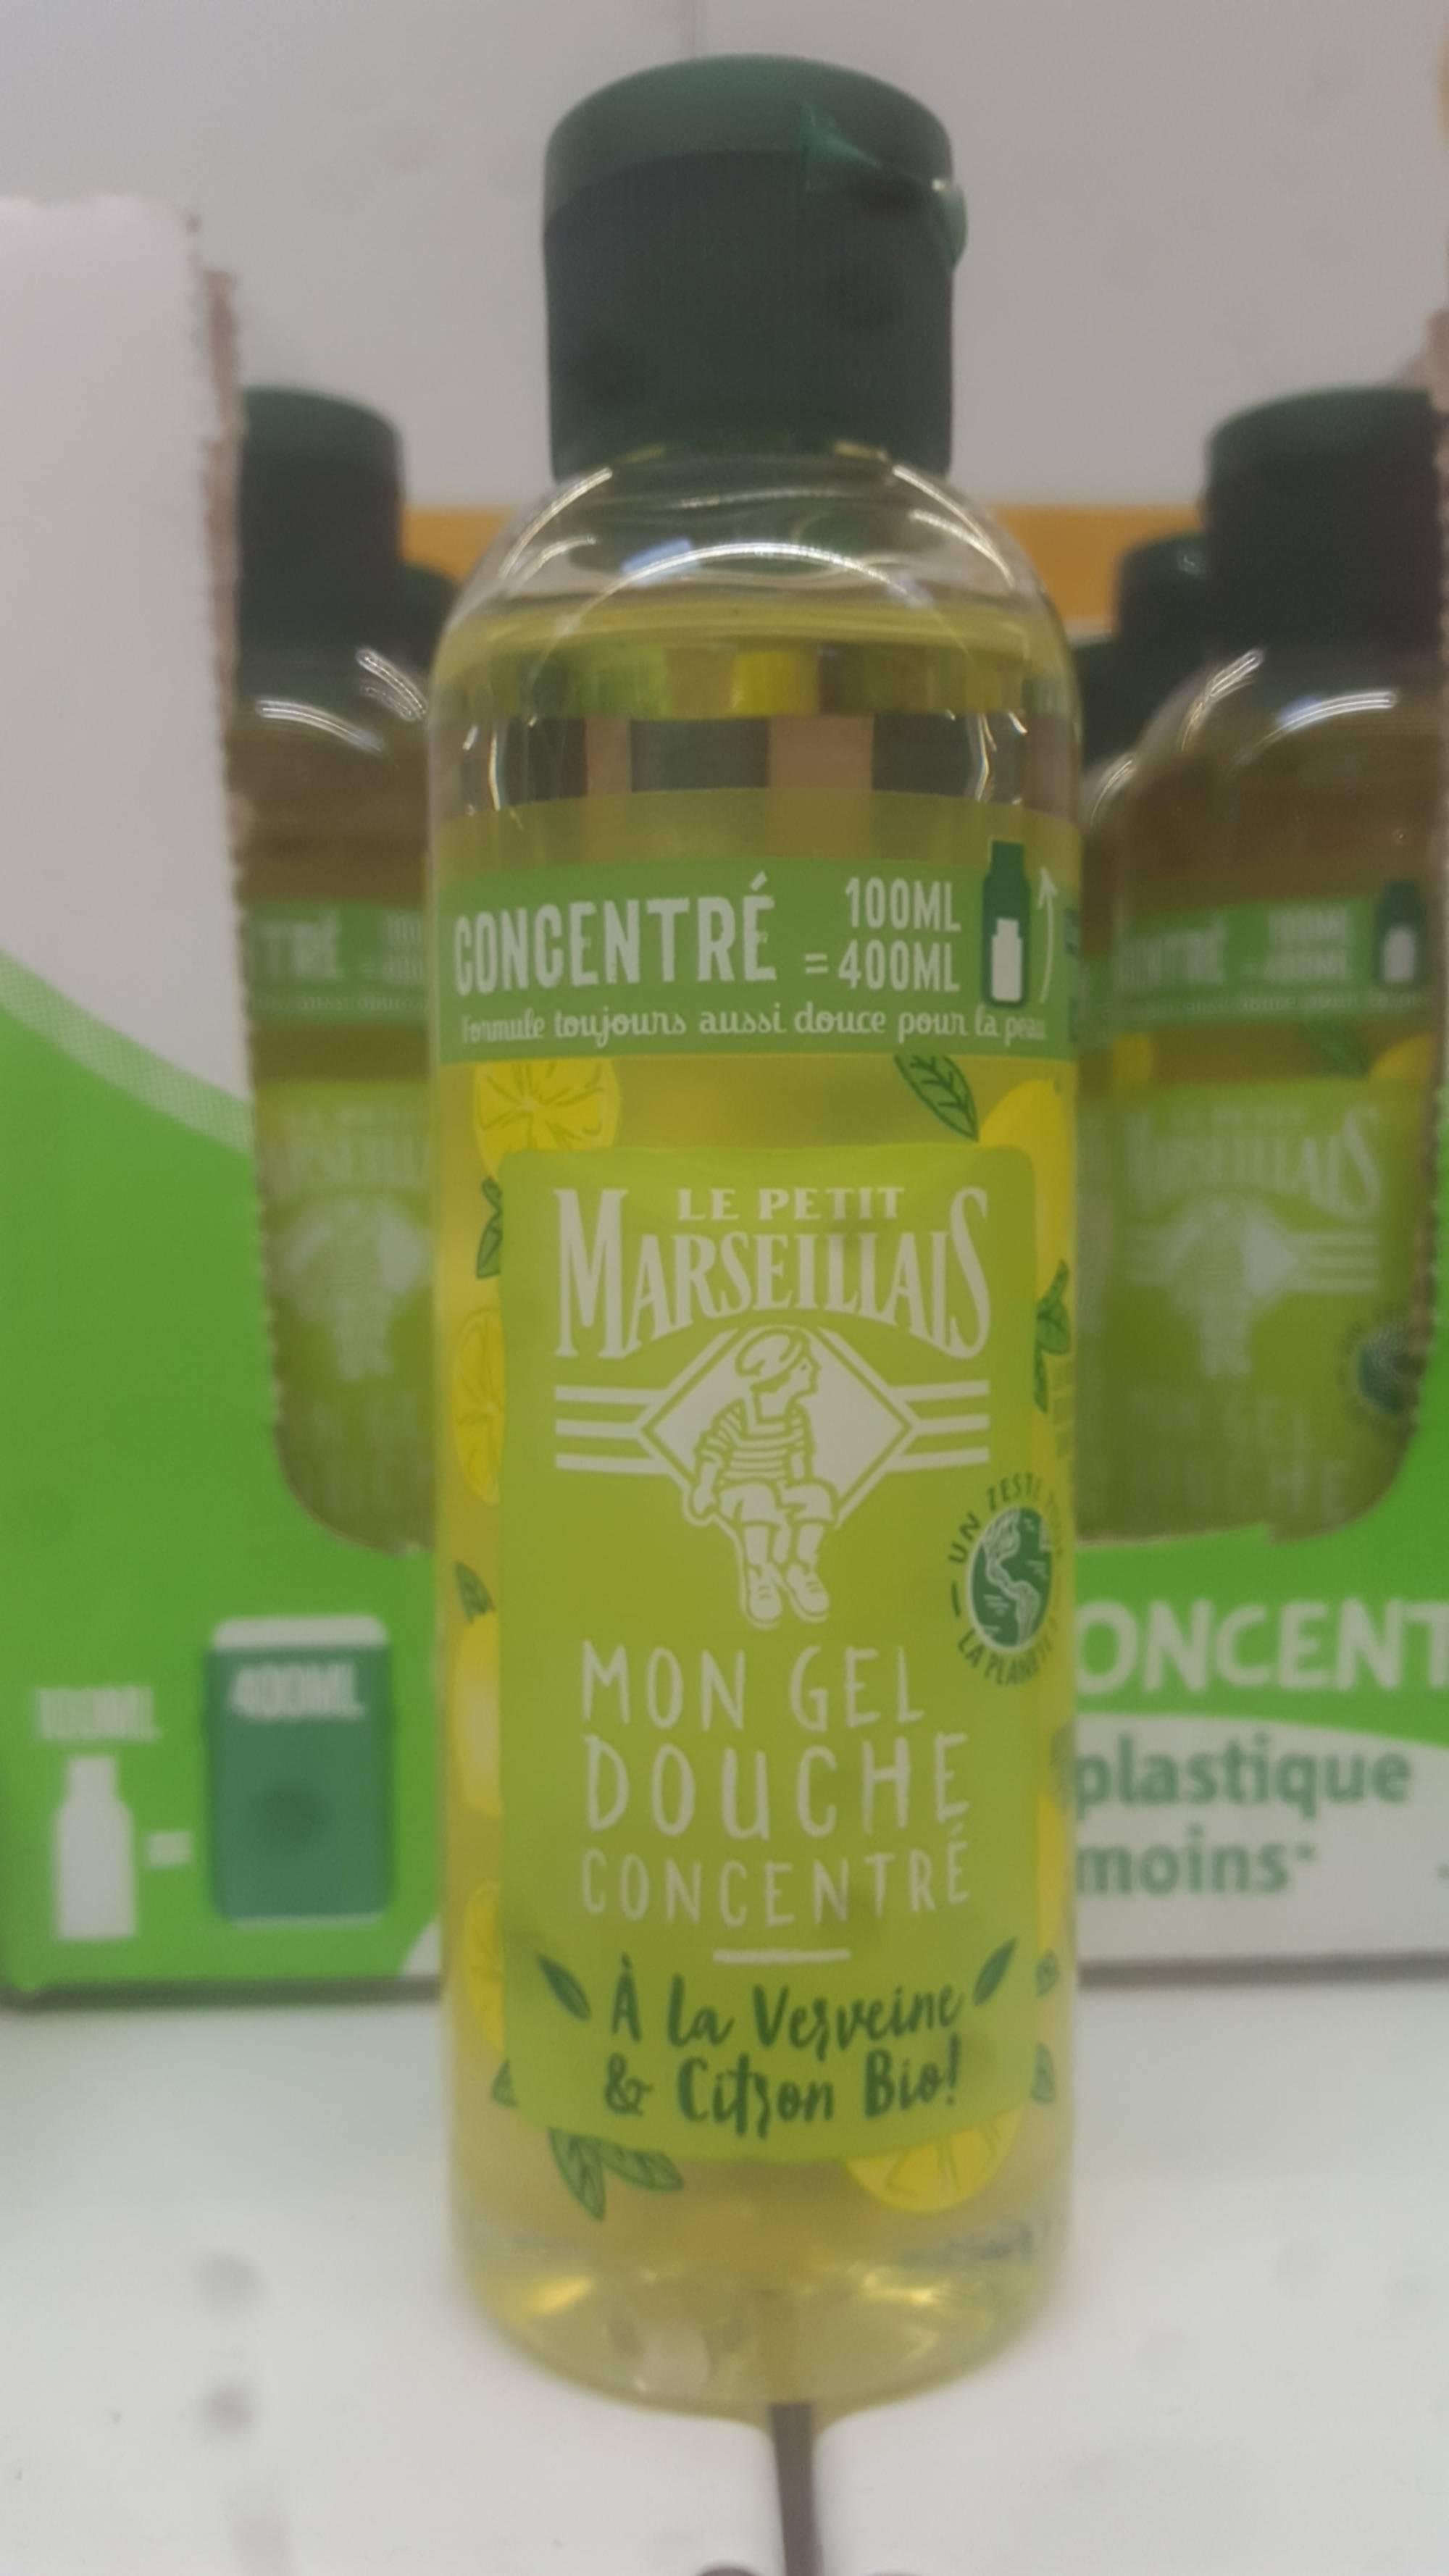 LE PETIT MARSEILLAIS - Mon gel douche concentré verveine & citron bio